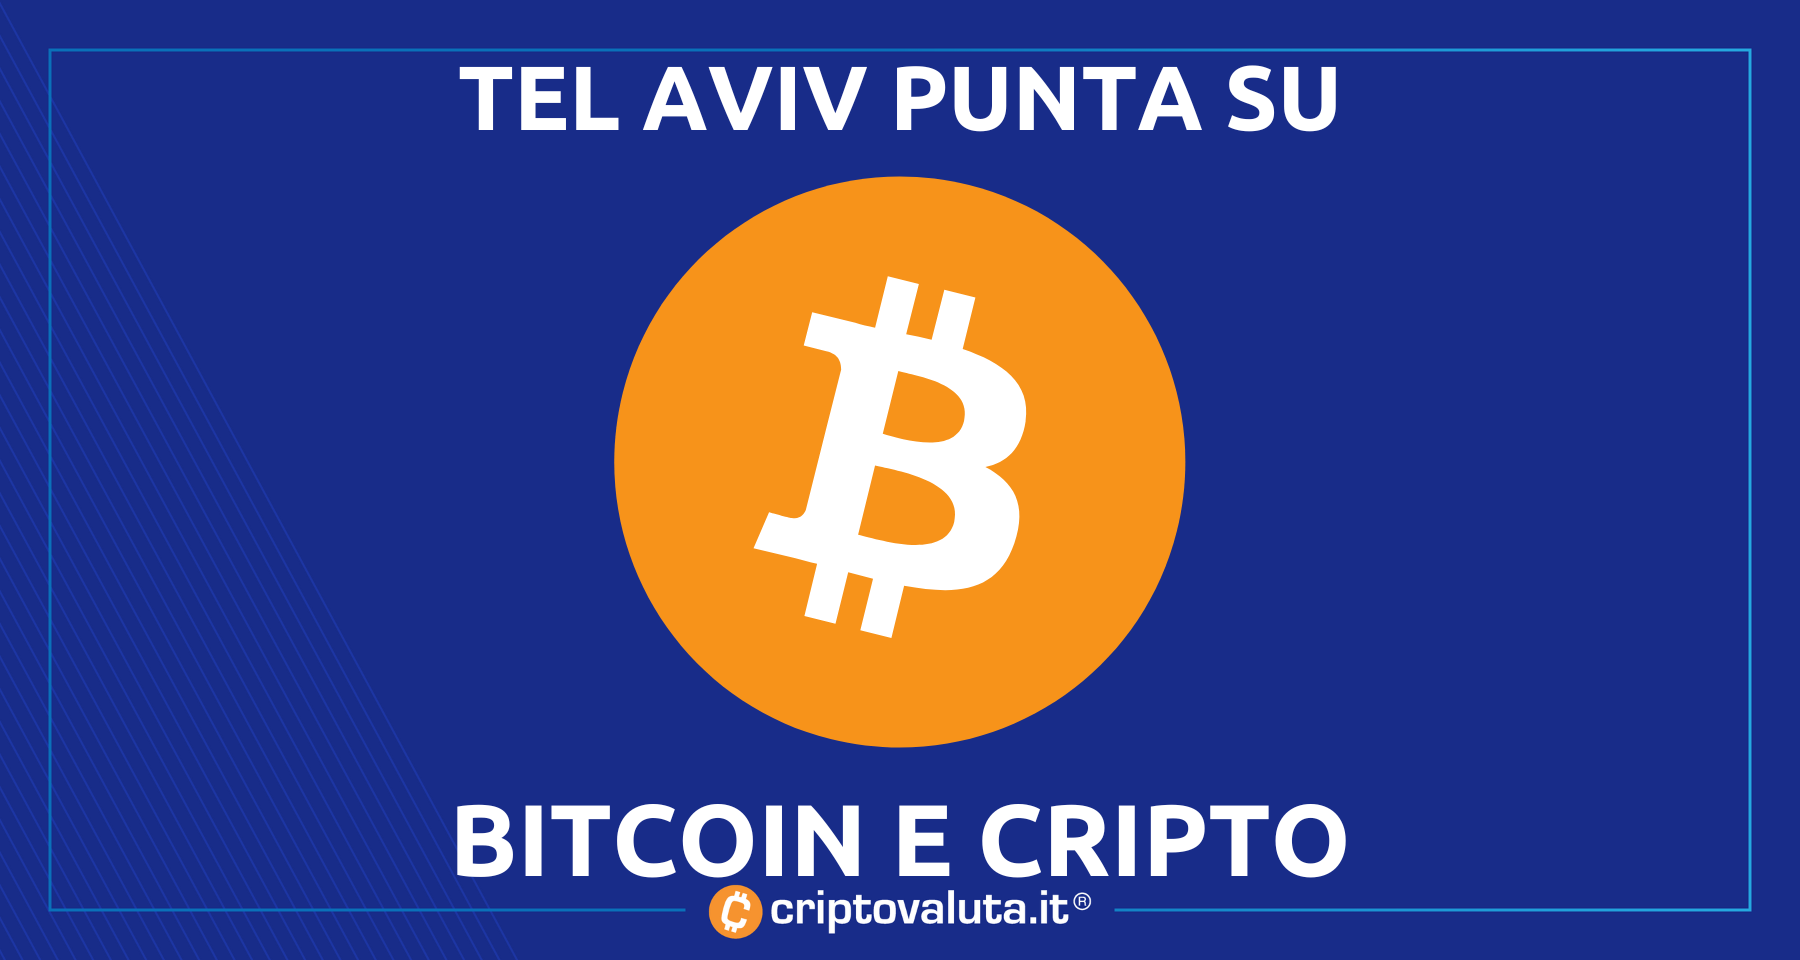 La borsa di Tel Aviv su Bitcoin e cripto | Piano per le negoziazioni